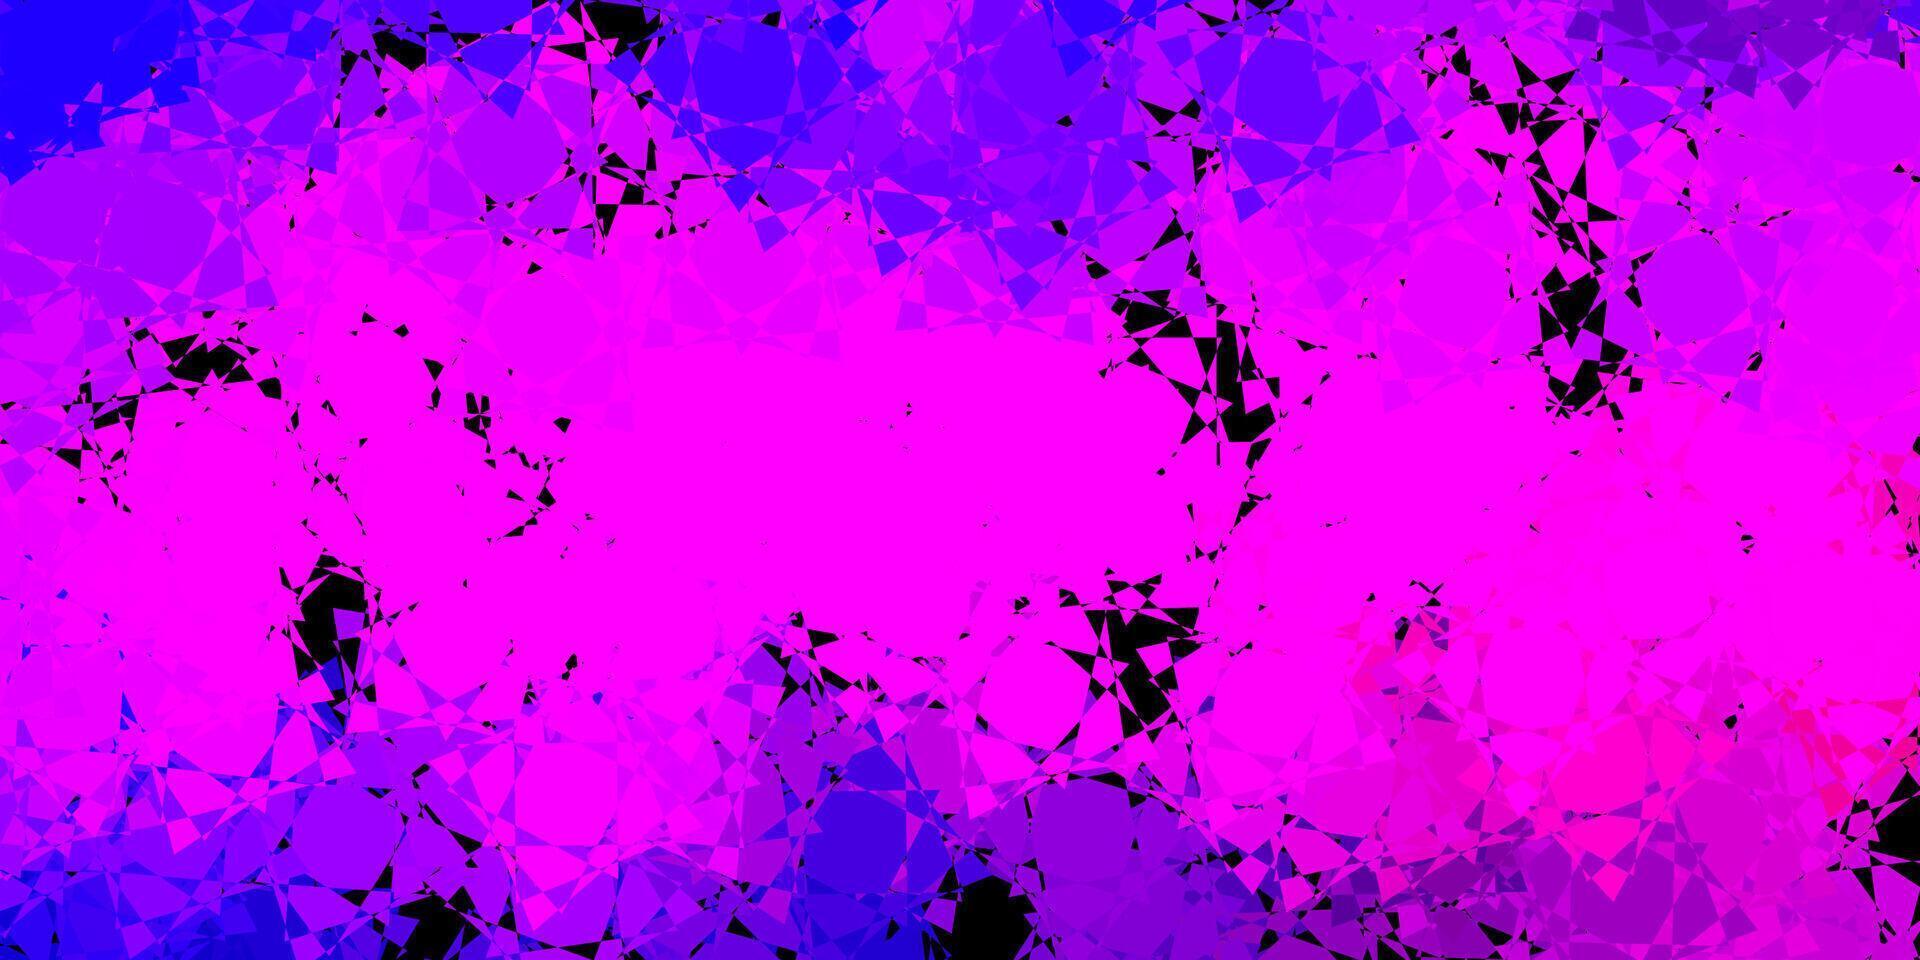 sfondo vettoriale viola scuro, rosa con triangoli, linee.